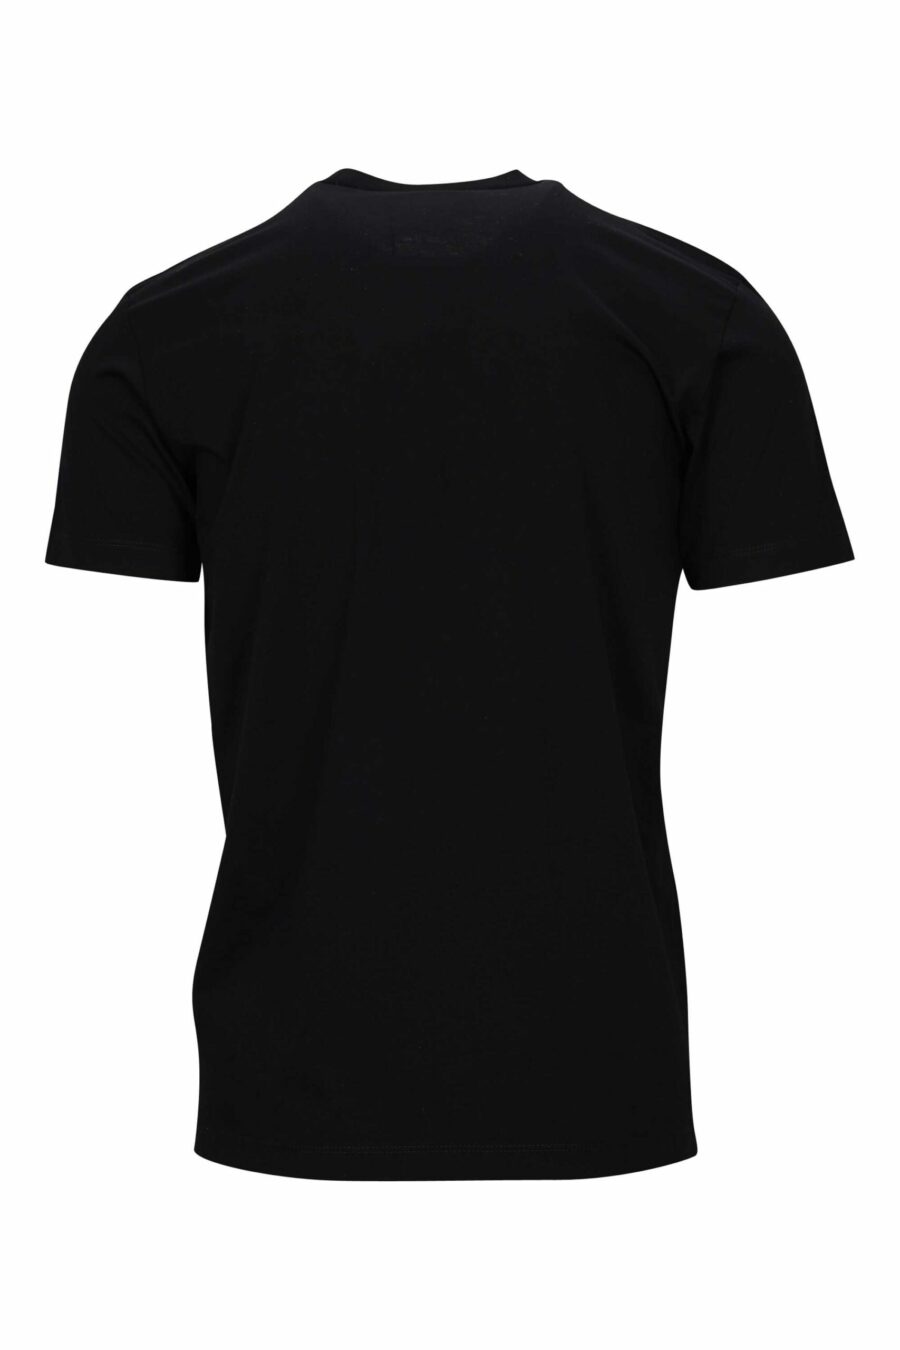 Camiseta negra con maxilogo "icon" fucsia neon borroso - 8054148359058 1 scaled